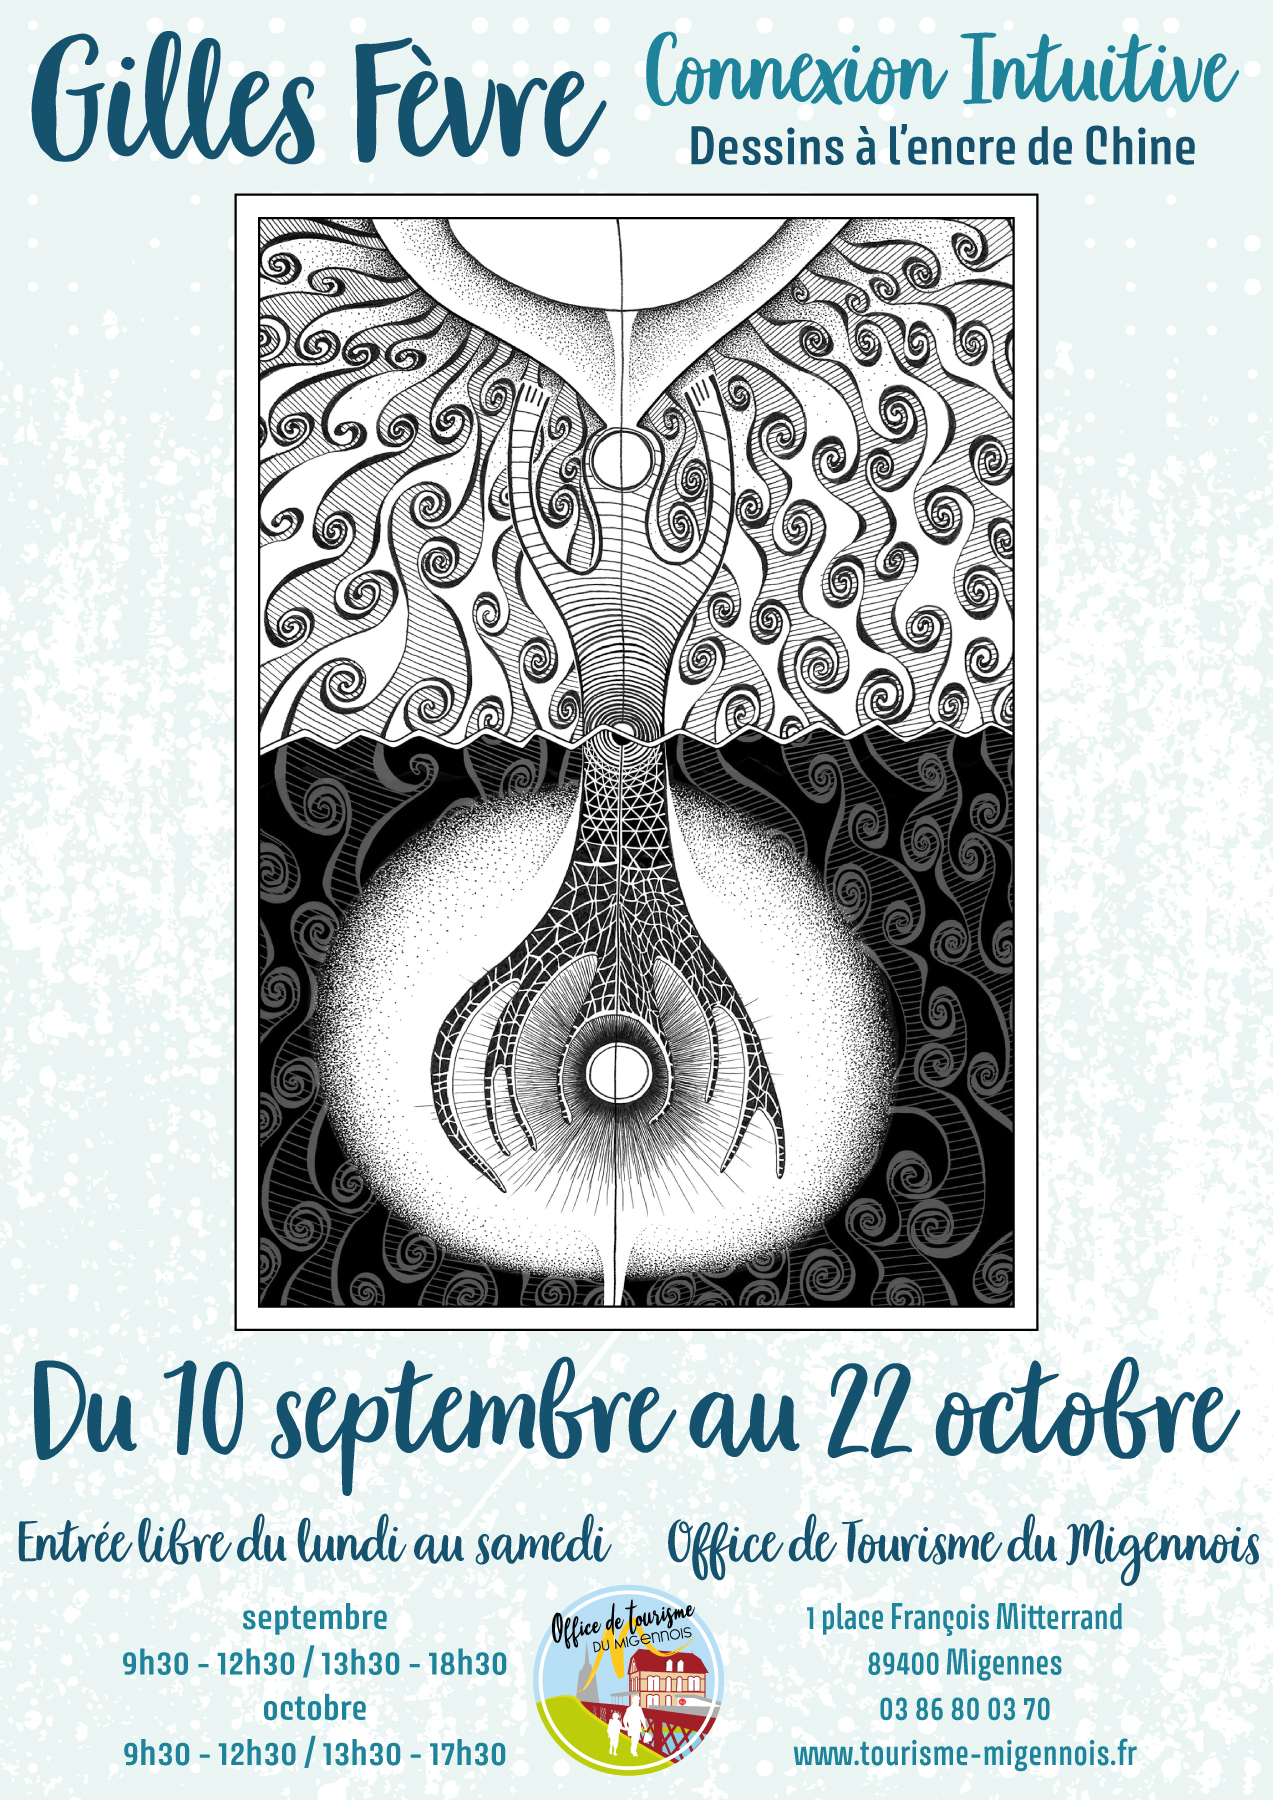 L'Office de Tourisme du Migennois accueillera l'exposition "Connexion Intuitive" de Gilles Fèvre du 10 septembre au 22 octobre.